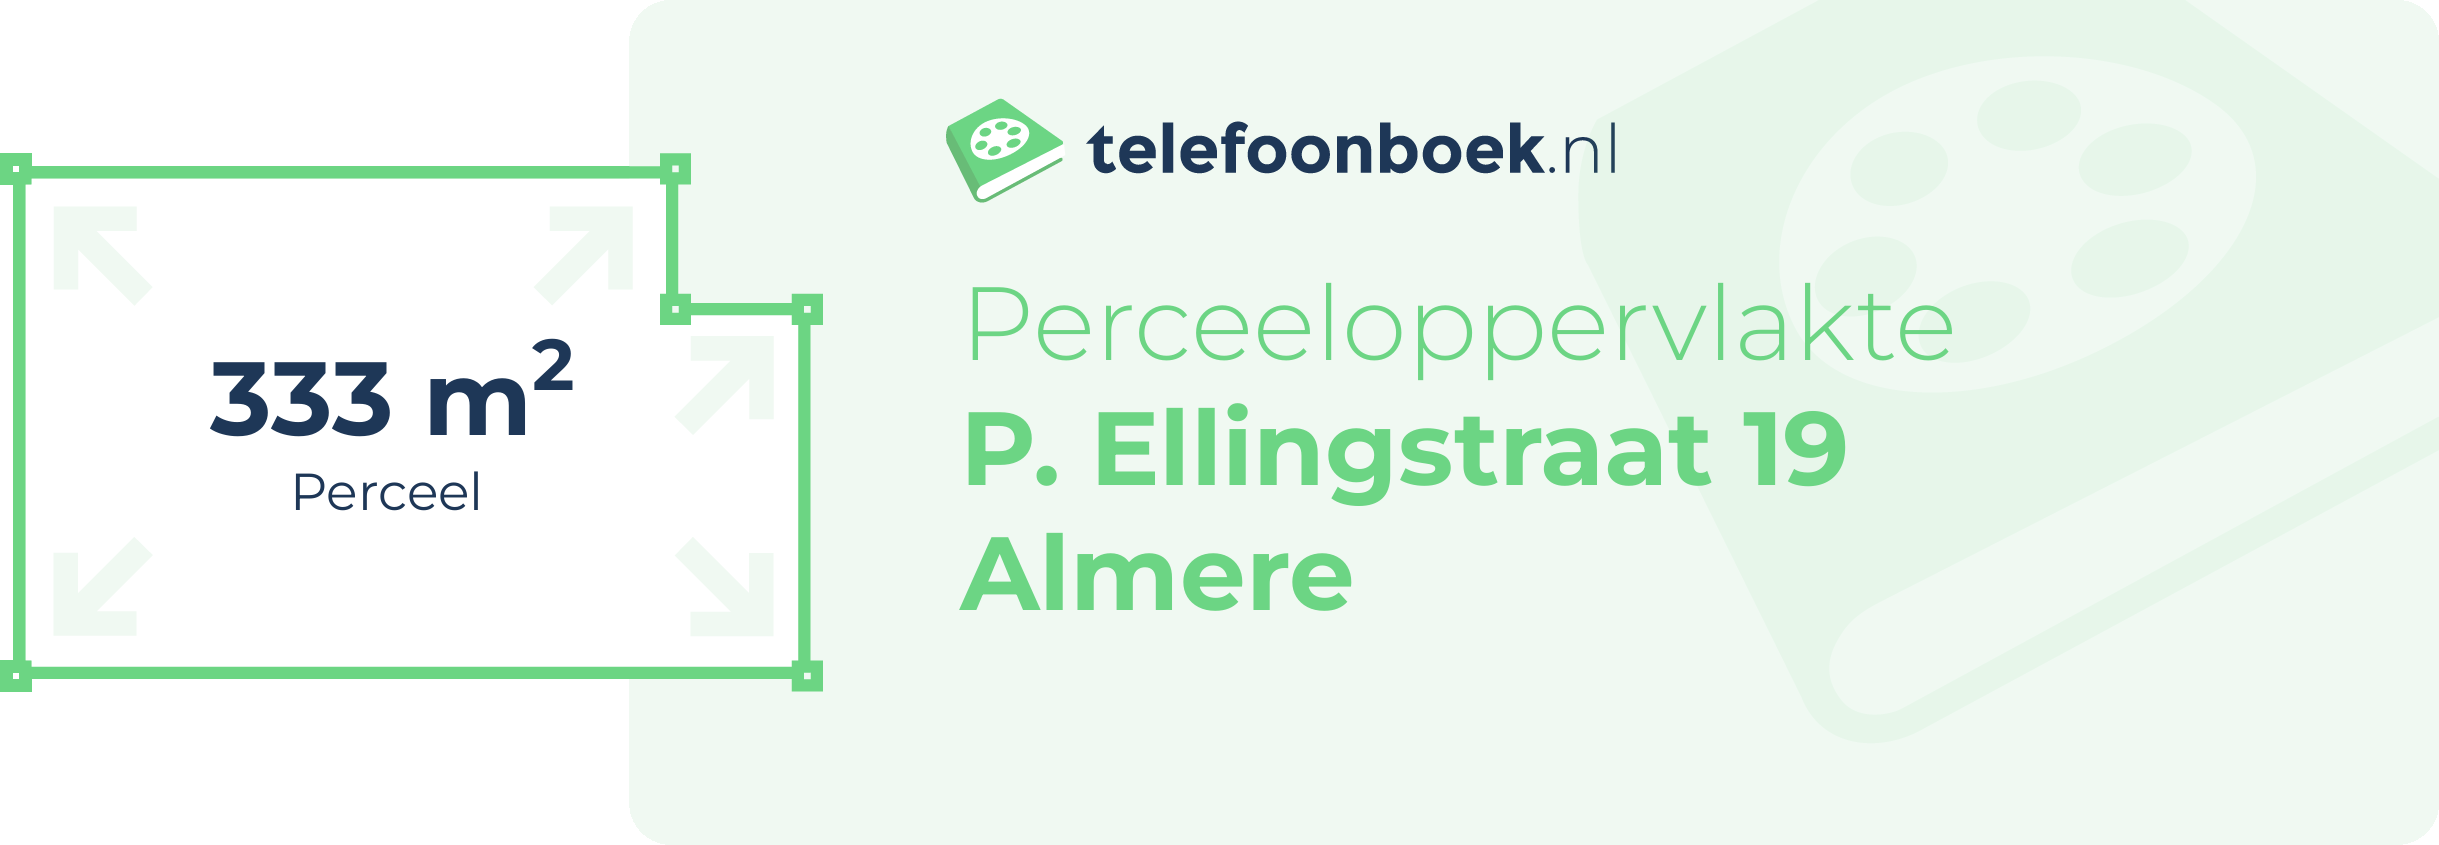 Perceeloppervlakte P. Ellingstraat 19 Almere